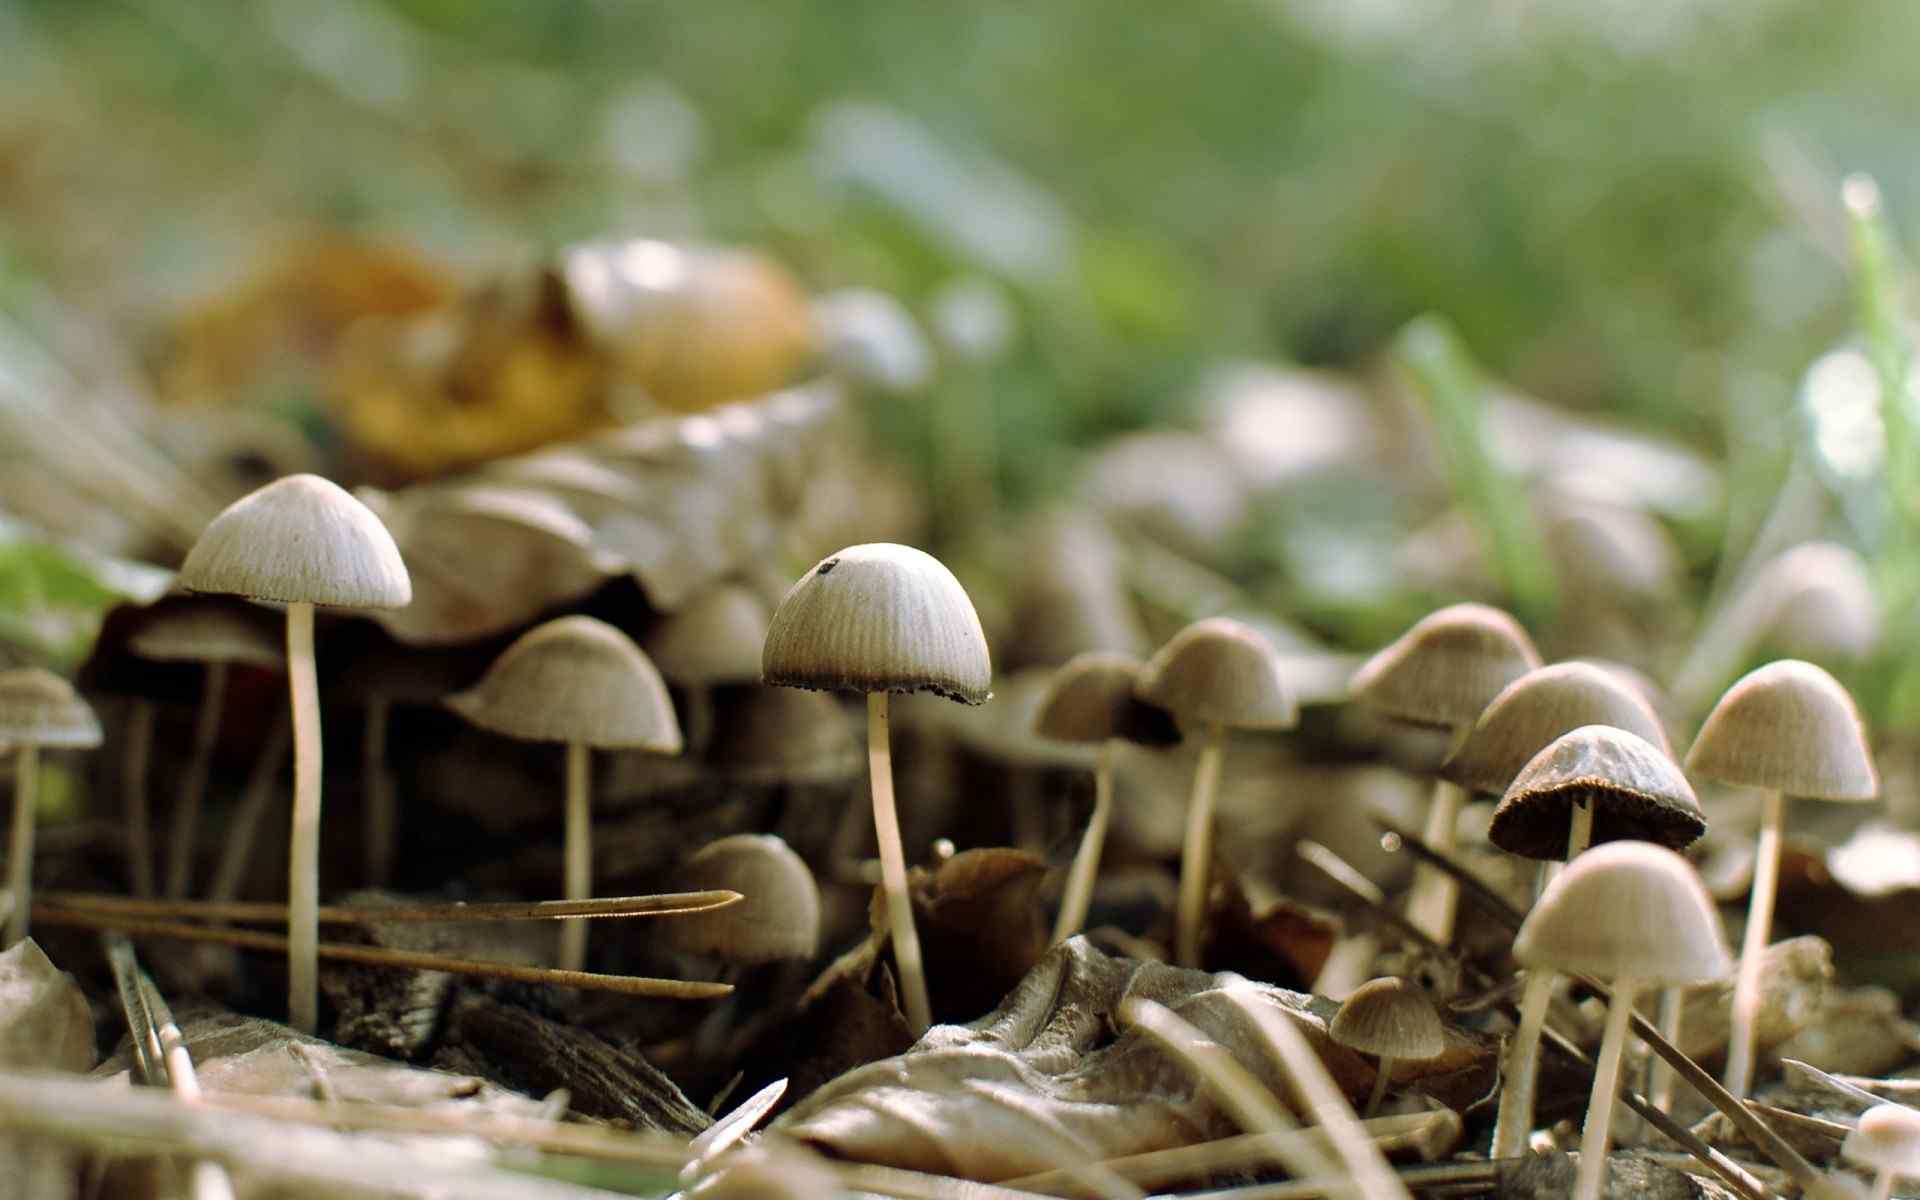 野生菌类蘑菇壁纸_风景_太平洋科技